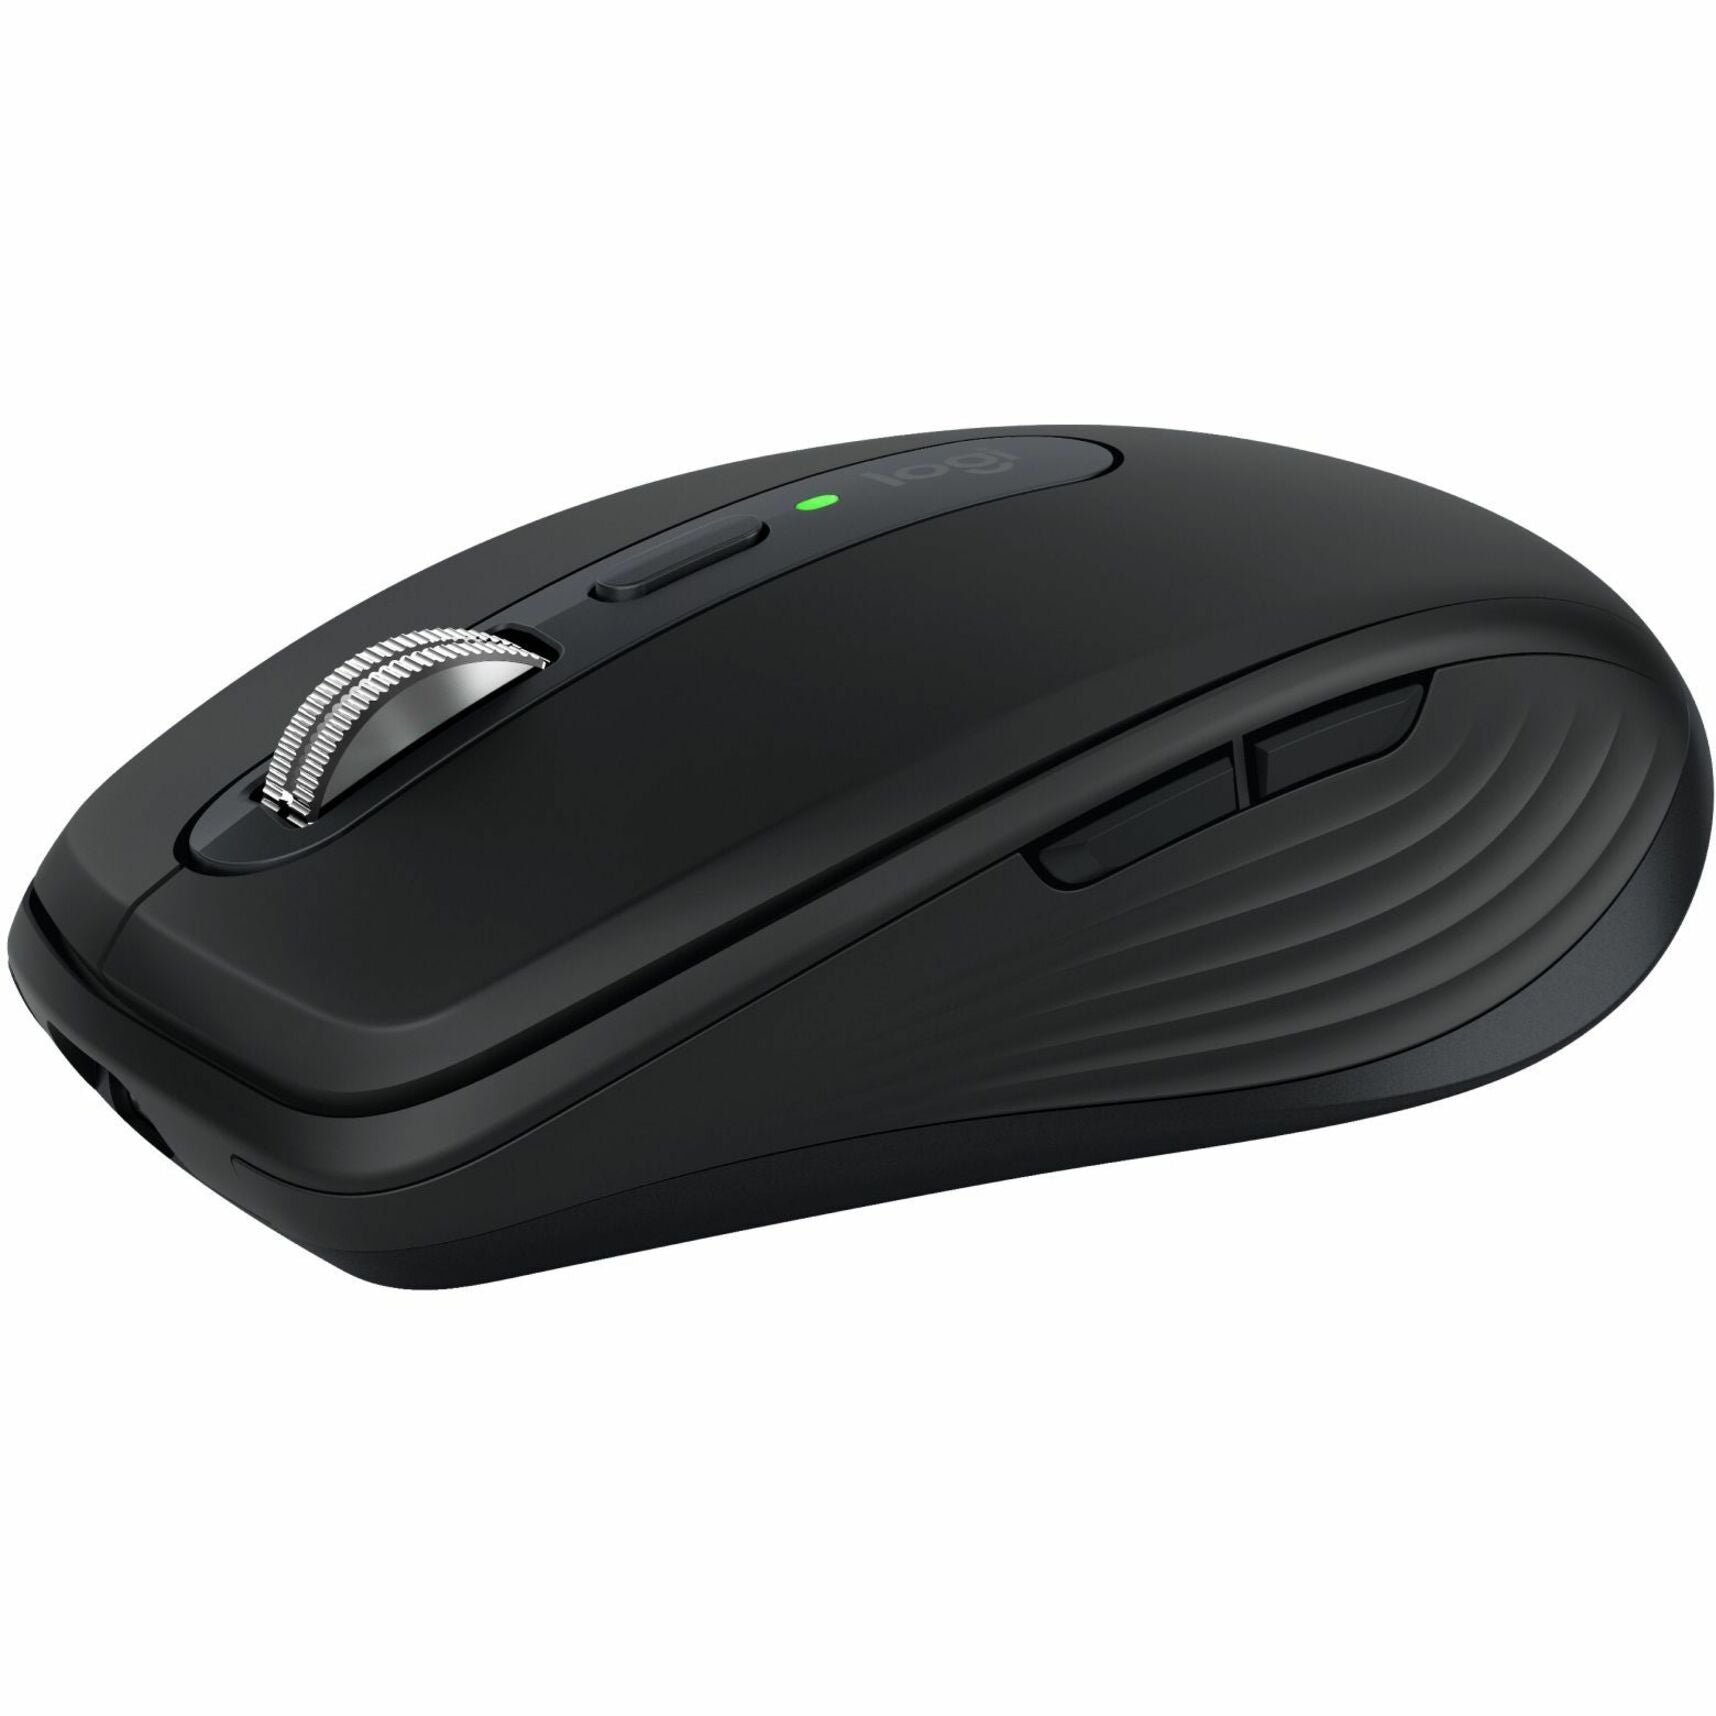 Logitech 910-006928 Mouse, Black